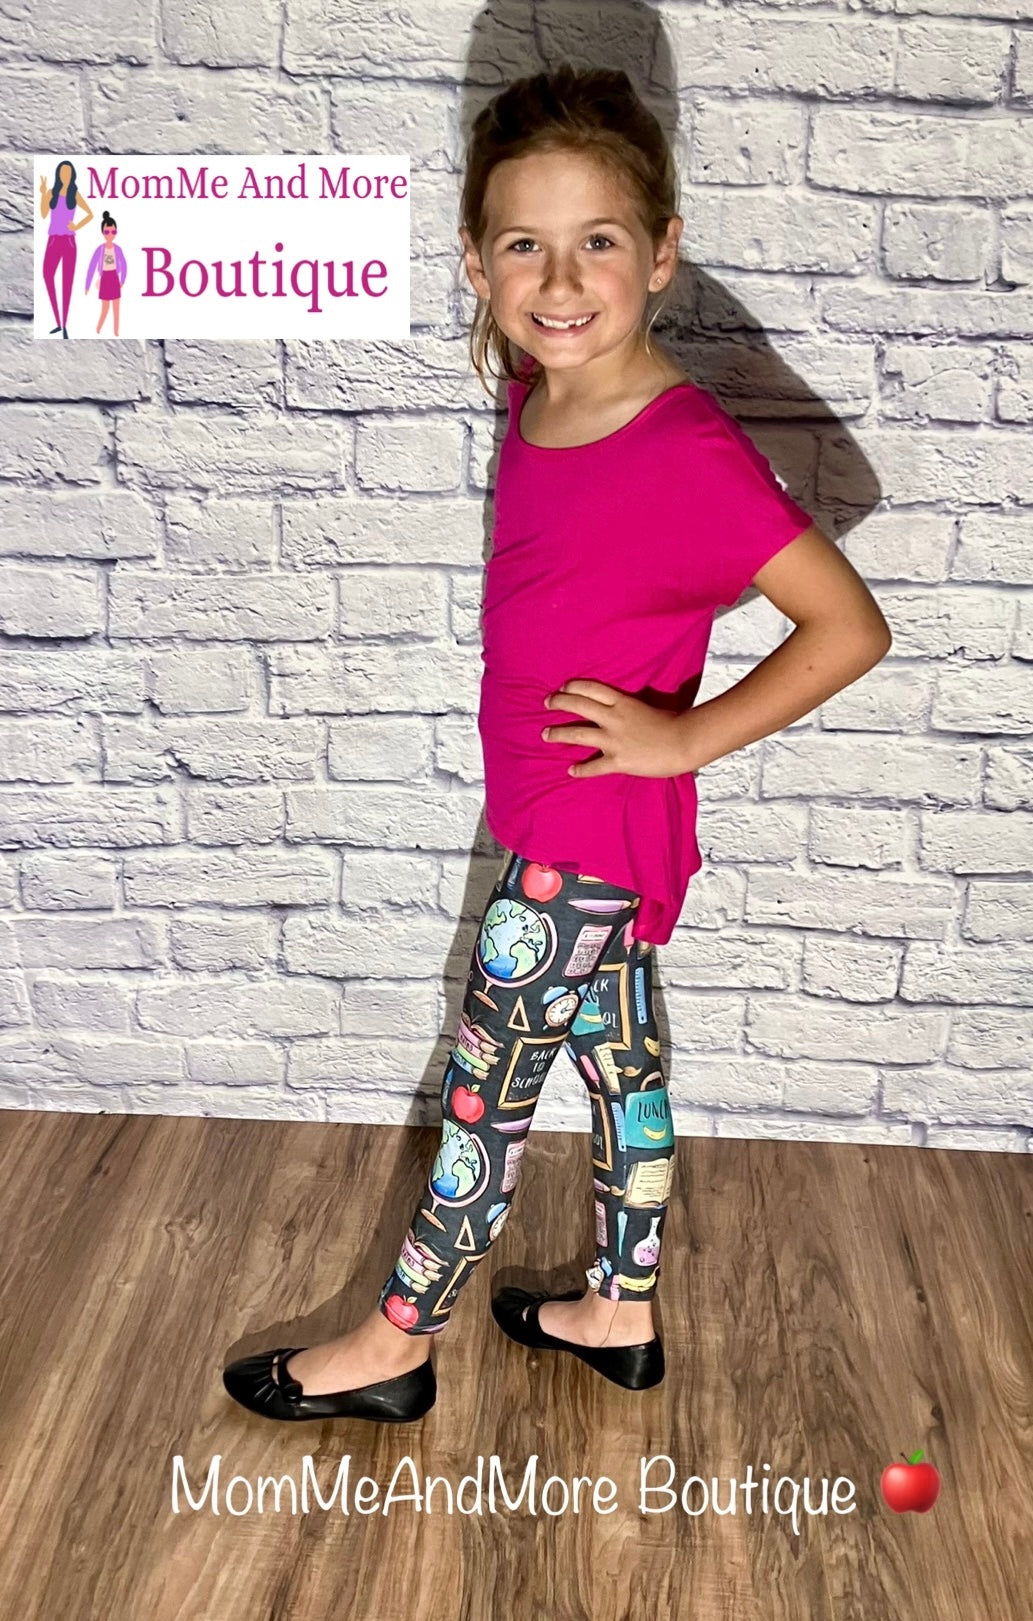 Buy Fasha Plain Leggings for Girls | Kids/Girls Leggings for Kids Dress |  Legins Pant for Girls New | Leggings, Pyjamas, Lowers for Girls/Kids Combo  Pack of 5 at Amazon.in